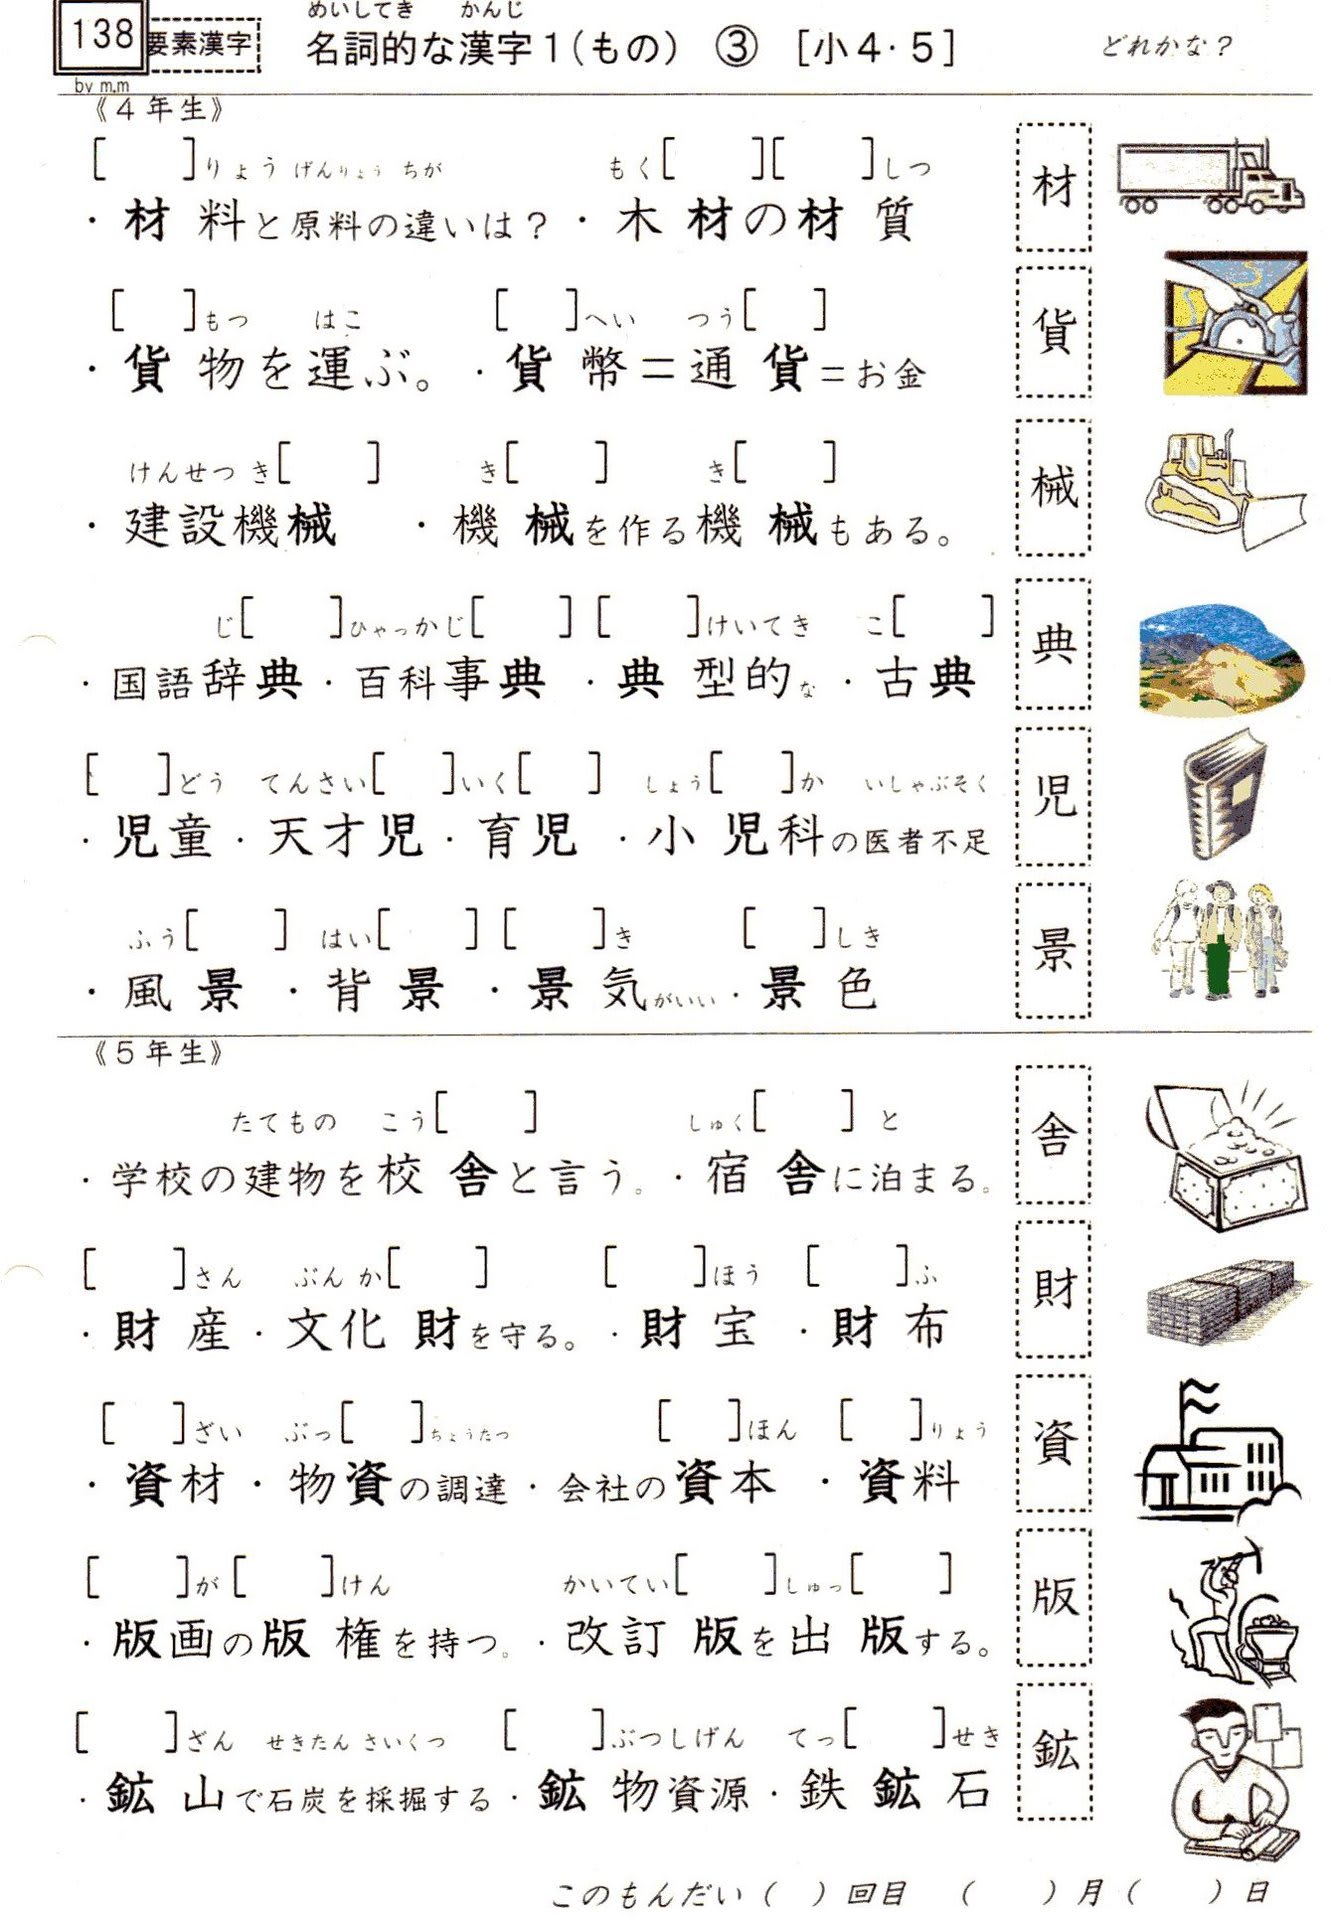 小学校漢字の読み 138 要素漢字 名詞的な漢字１ 4 5年 漢字は1文字で意味と読みを表す やおよろずの神々の棲む国で